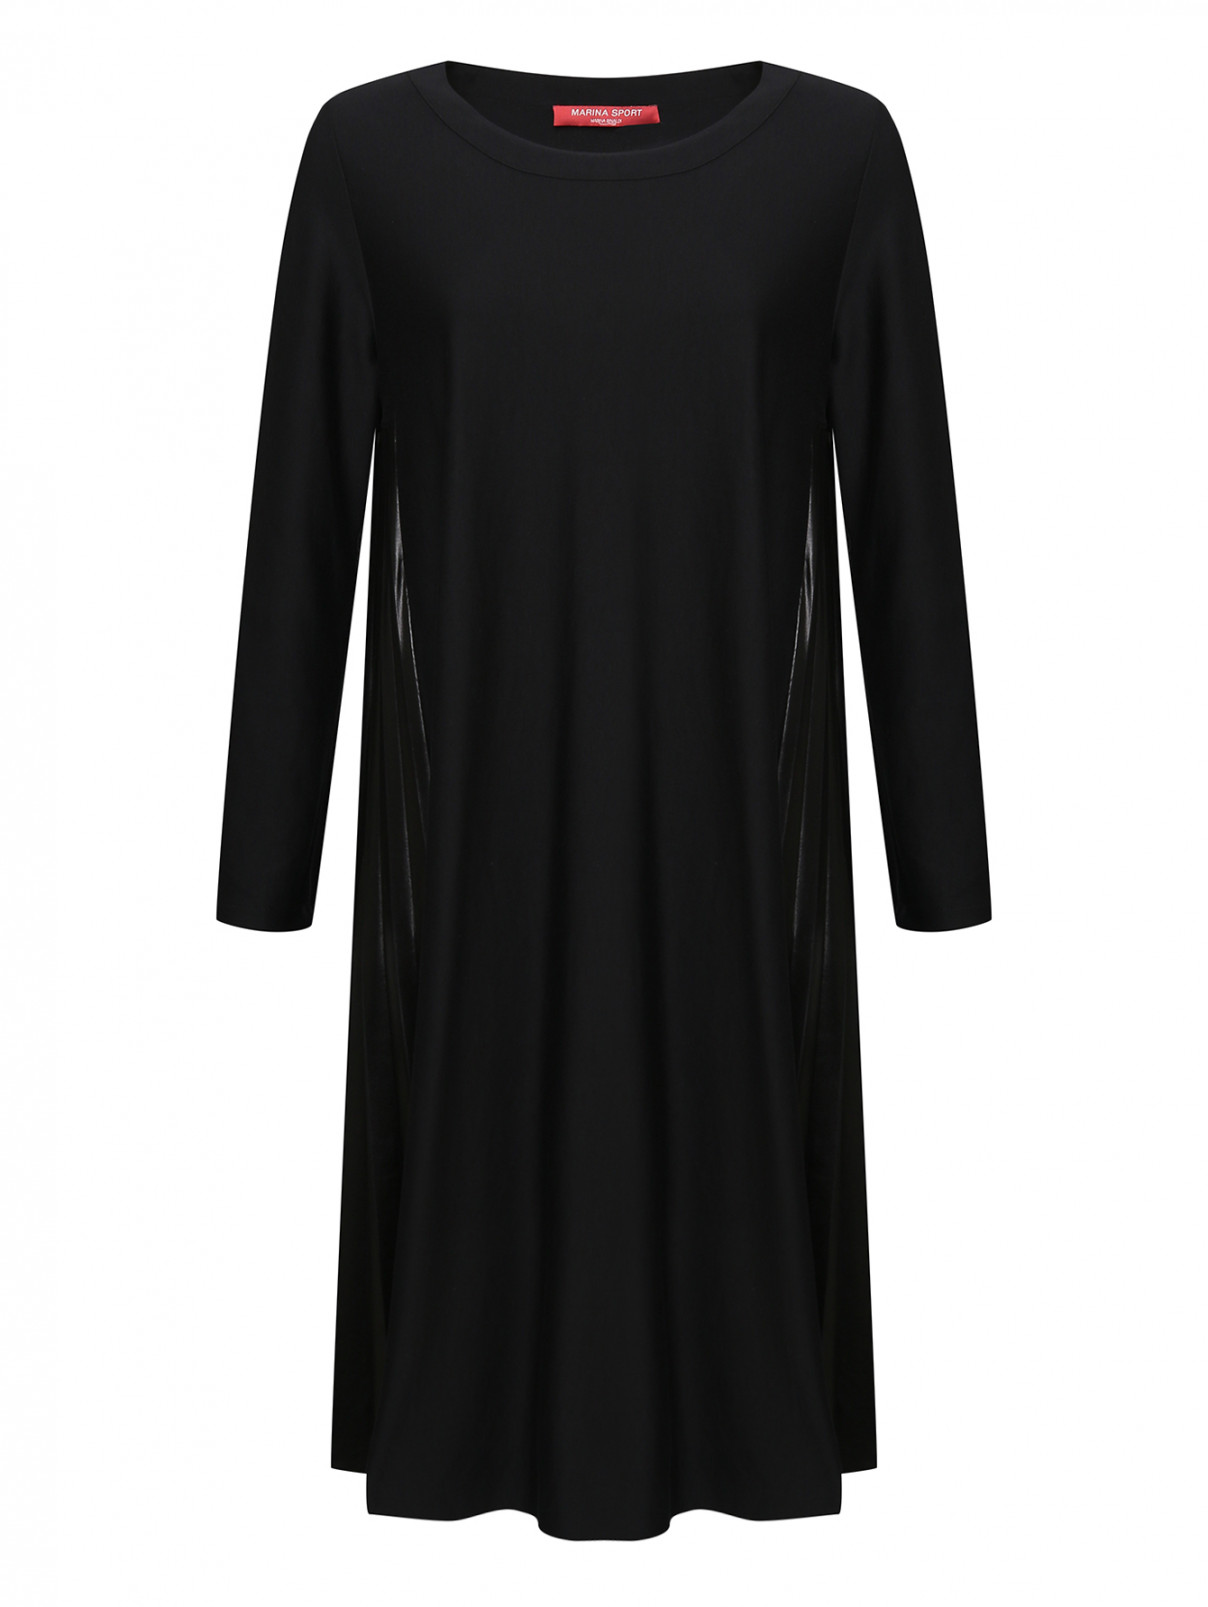 Платье со вставками по бокам MARINA SPORT MARINA RINALDI  –  Общий вид  – Цвет:  Черный